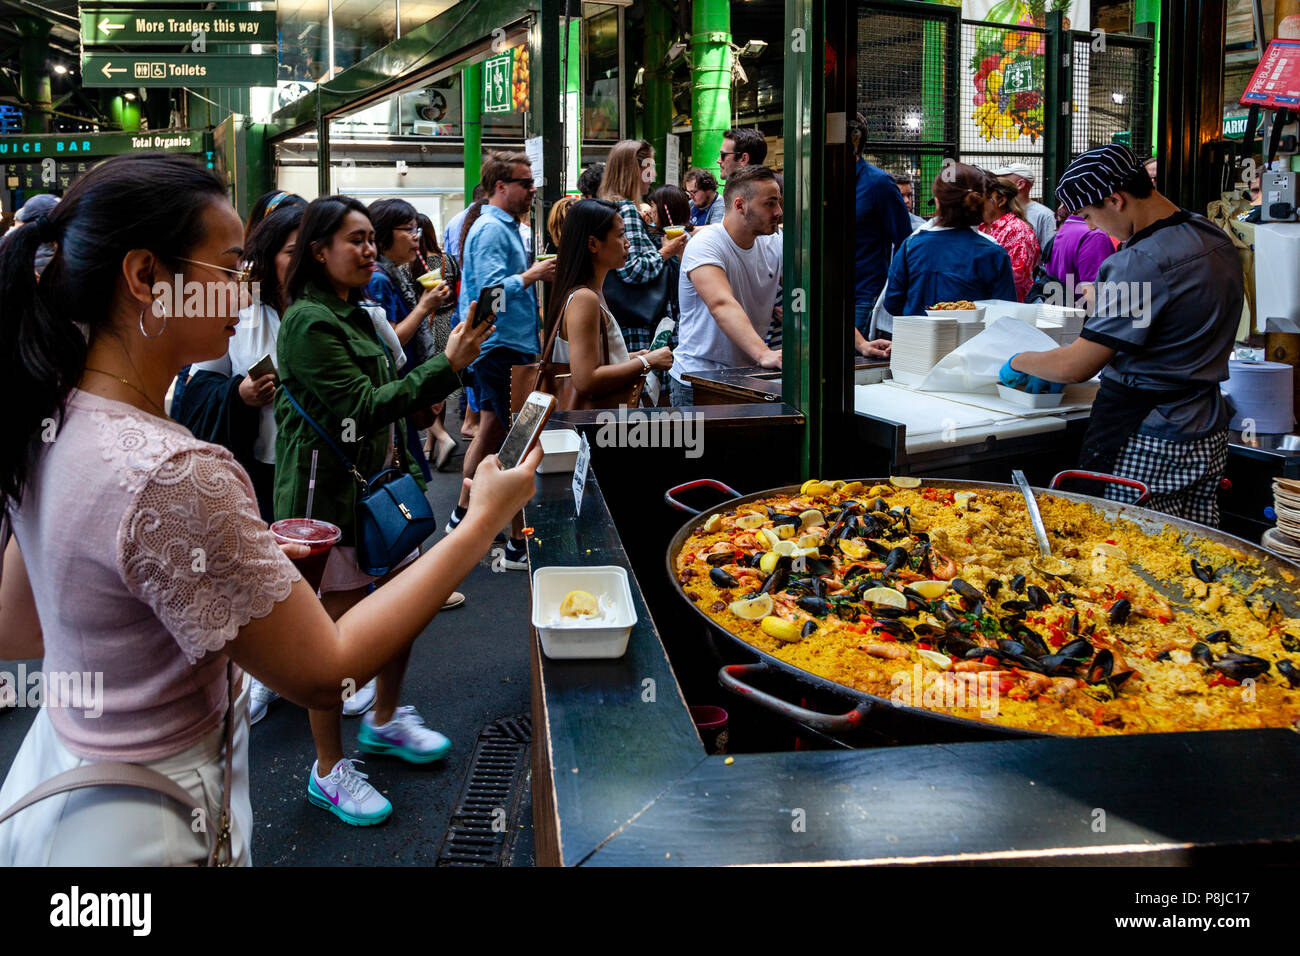 Asiatische Touristen Fotos von einem grossen Teller von Takeaway Paella am Borough Market, London, England Stockfoto